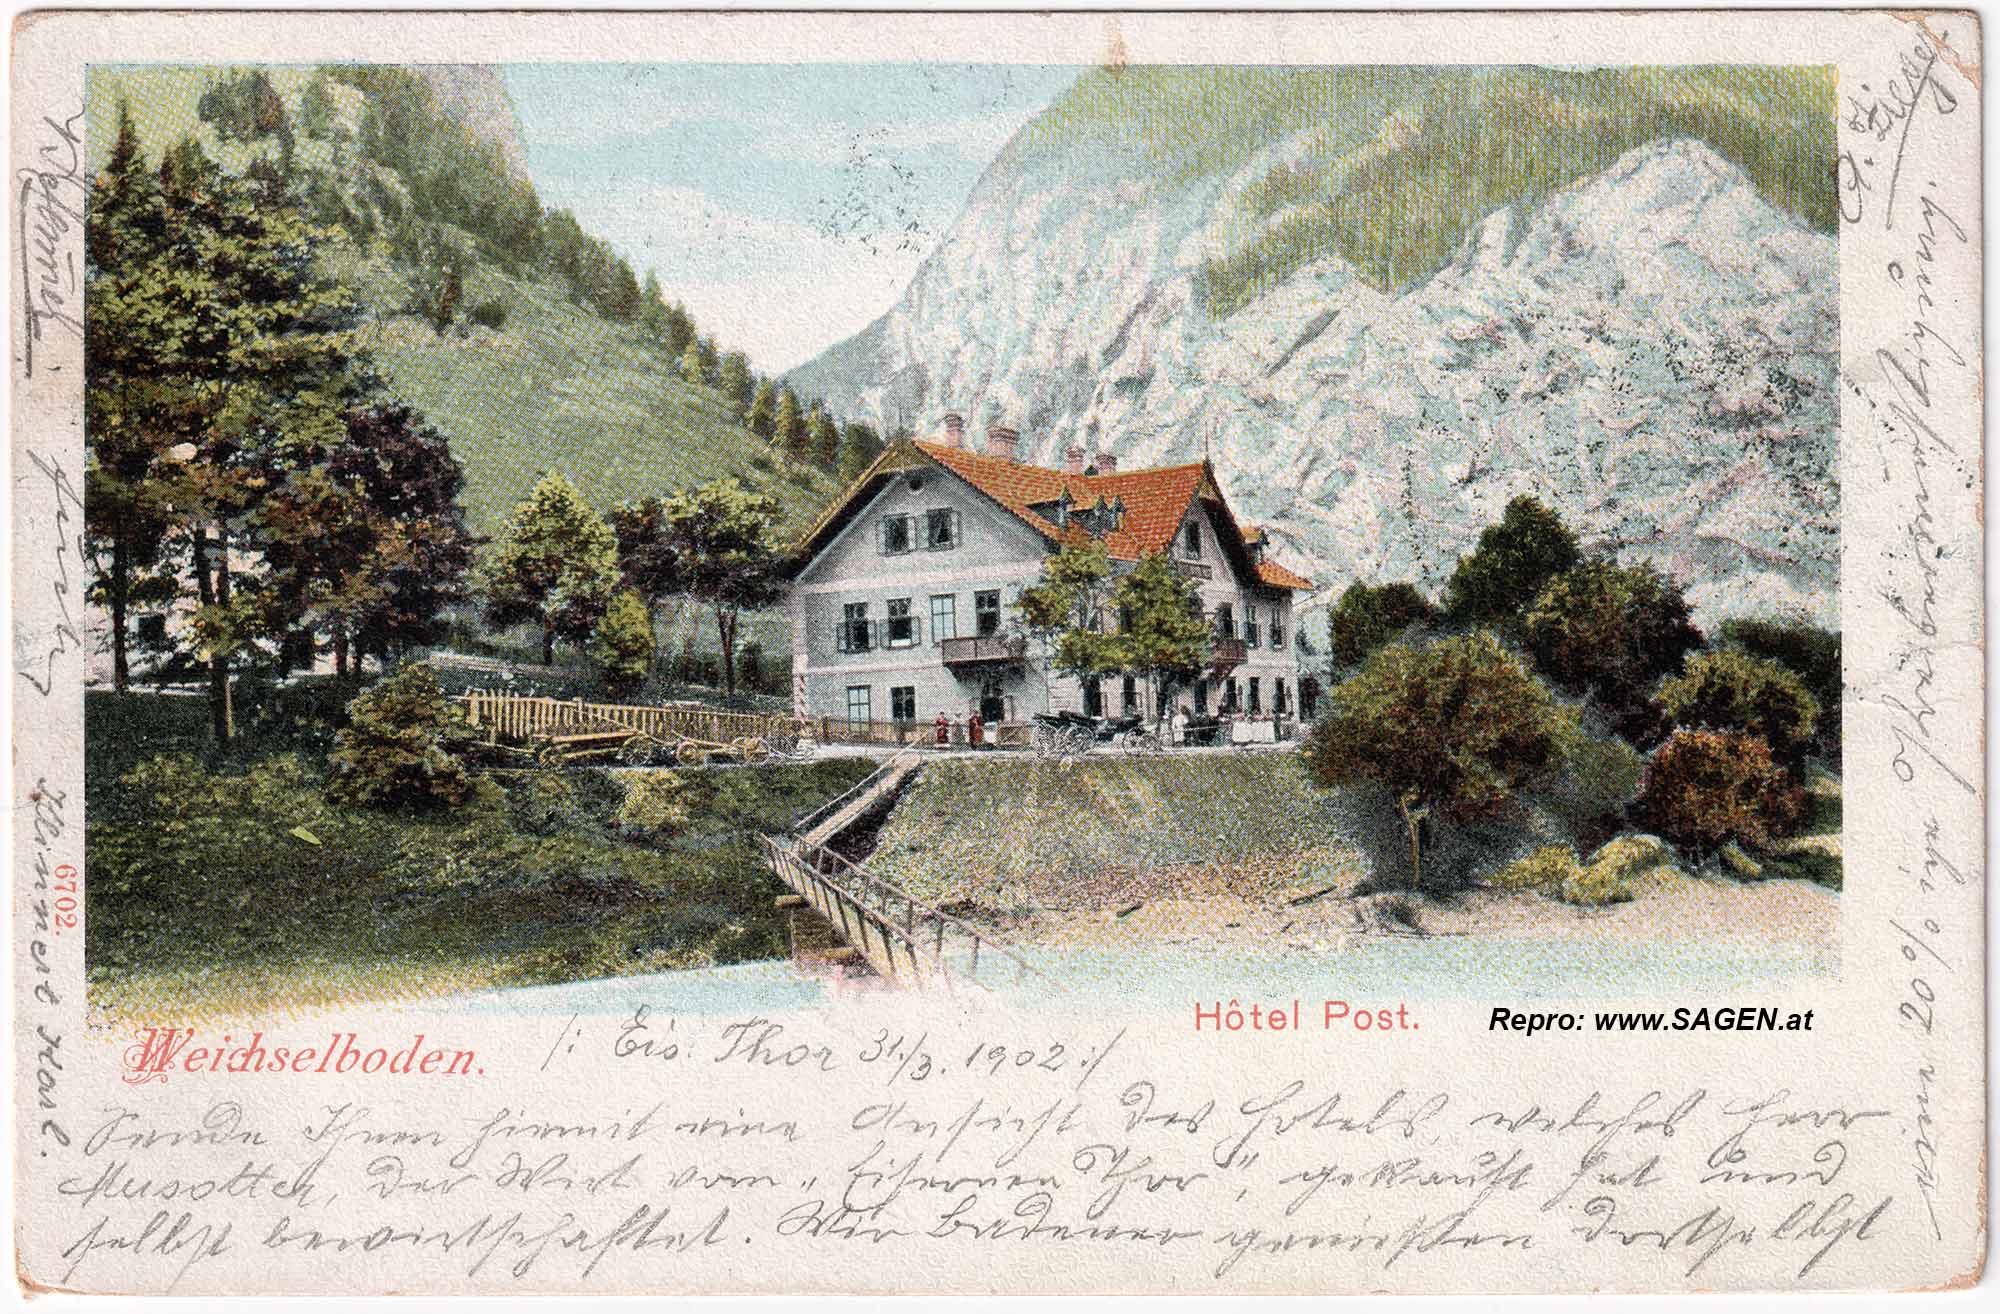 Weichselboden Hotel Post um 1900